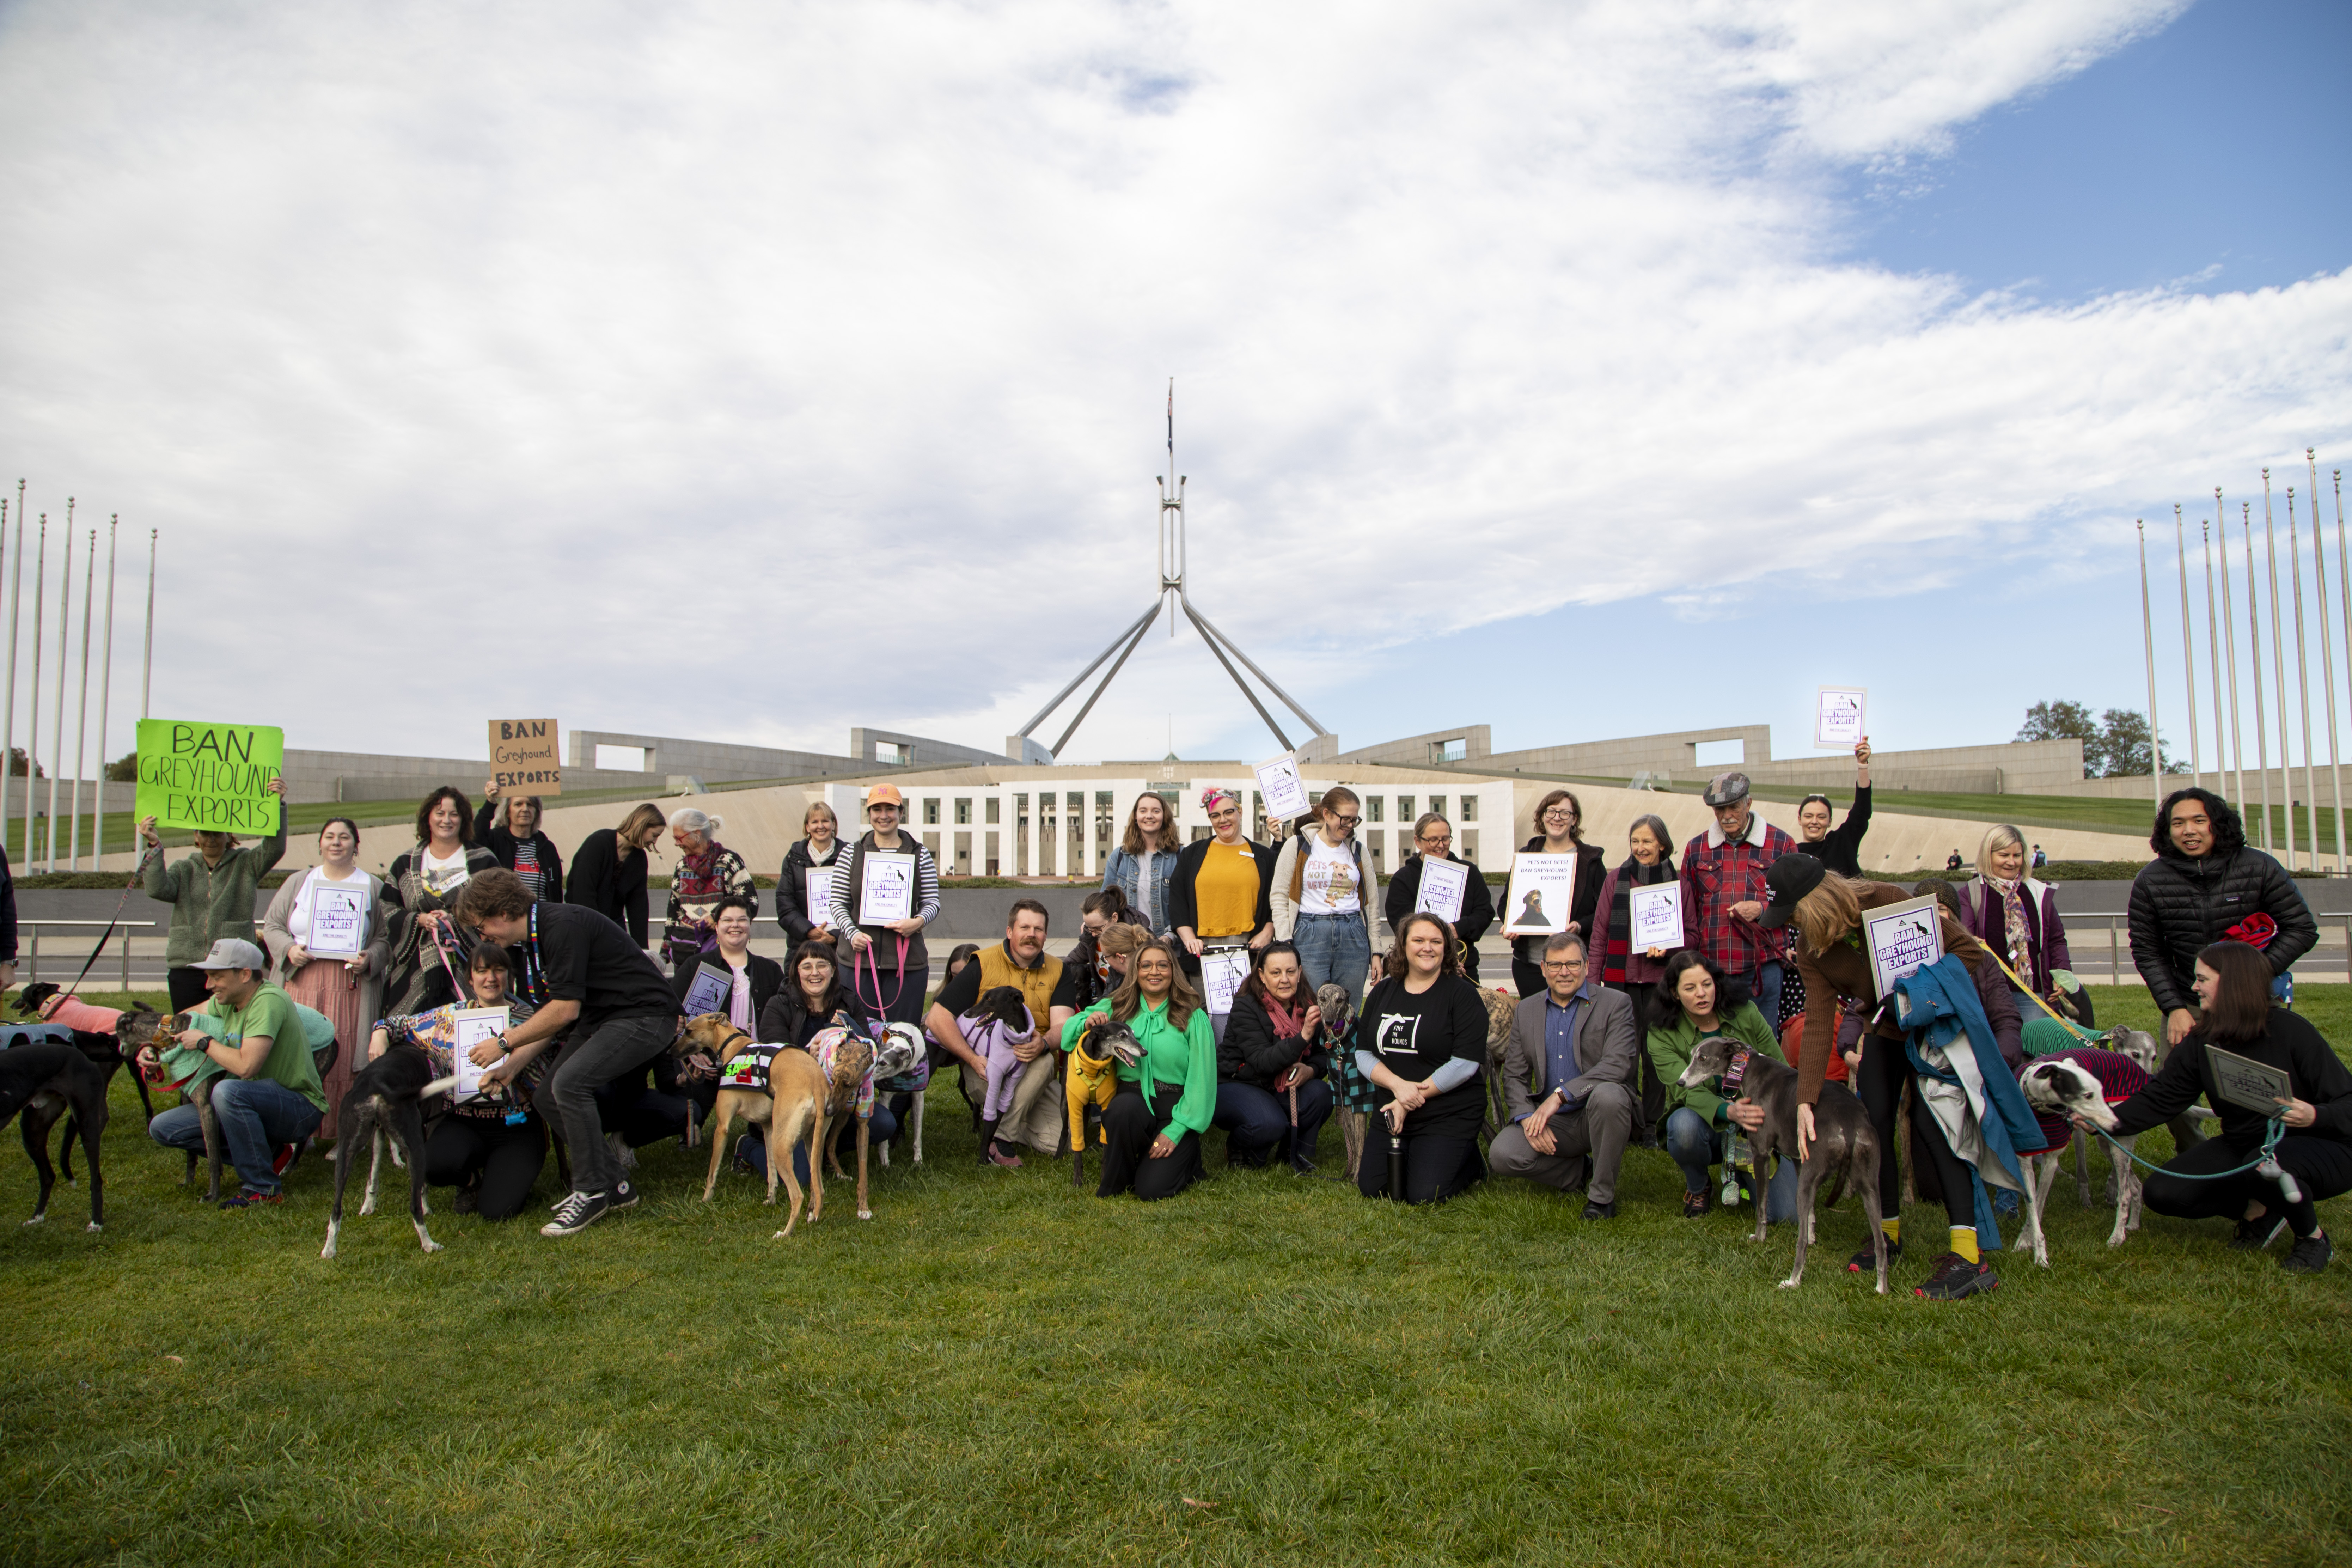 Canberra Ban Greyhound Export Meet